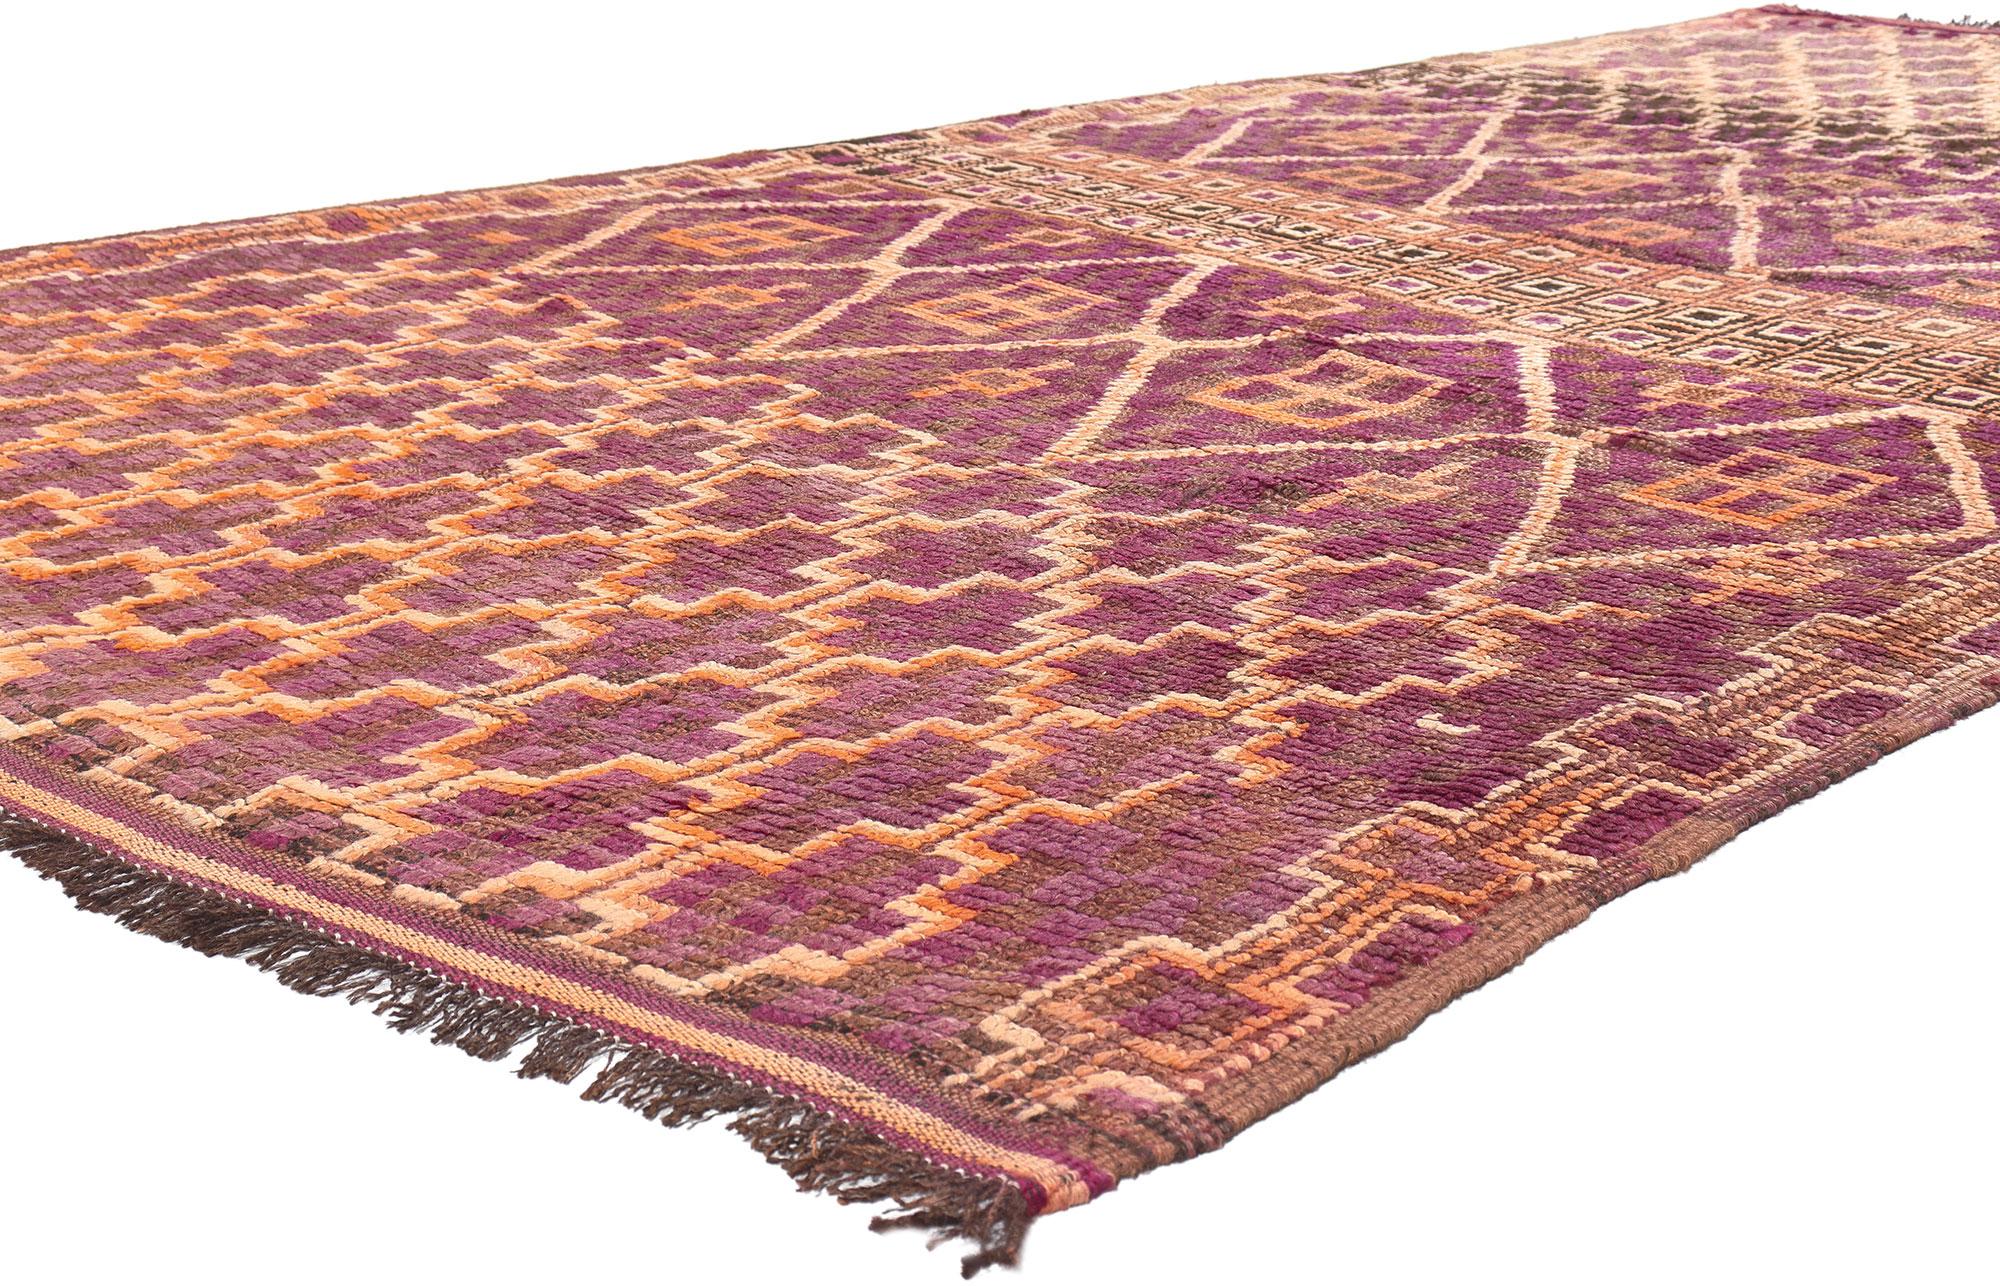 20917 Vintage Lila Beni MGuild Marokkanischer Teppich, 06'01 x 13'01. Die Teppiche von Beni Mguild, die mit dem bezaubernden Fachwissen der Berberfrauen vom Stamm der Ait M'Guild im mystischen Atlasgebirge in Marokko gewebt wurden, werden für ihre